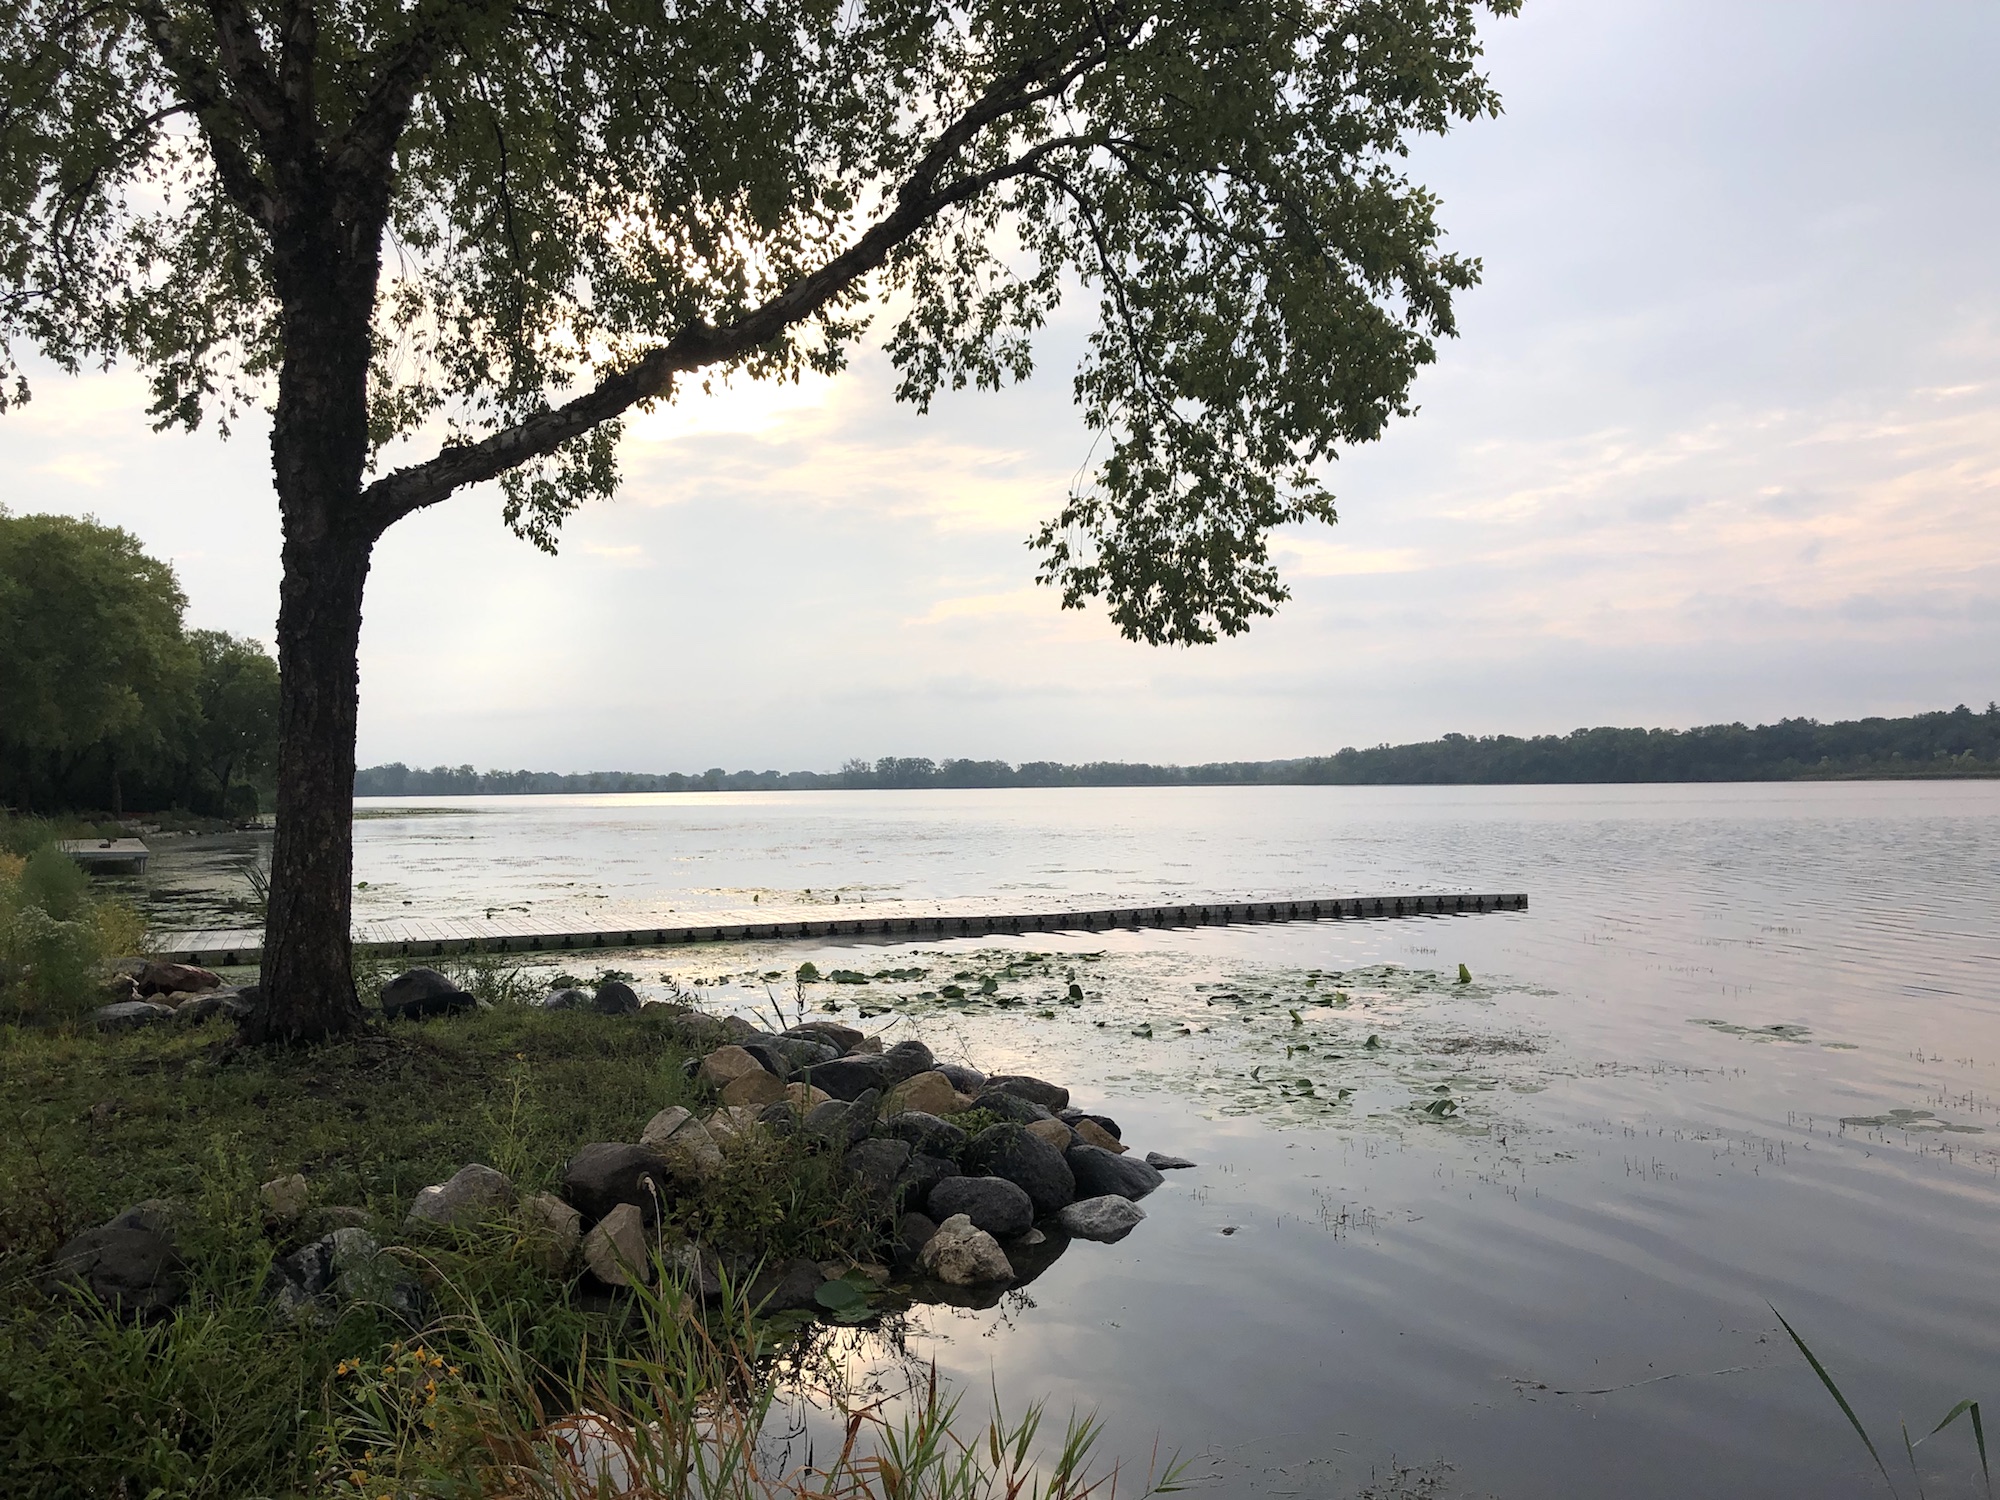 Lake Wingra on September 10, 2019.